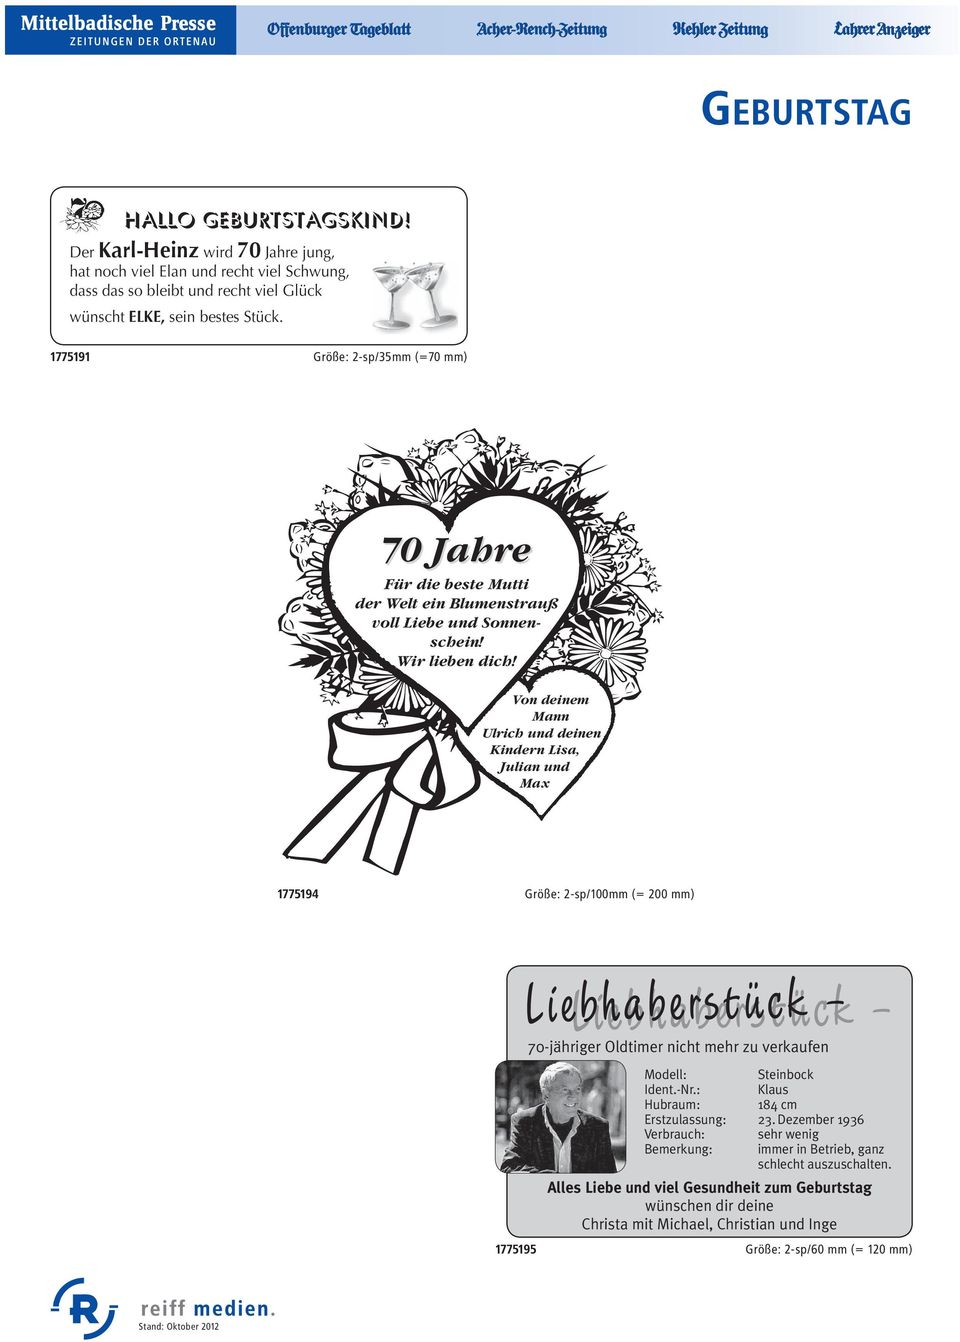 Von deinem Mann Ulrich und deinen Kindern Lisa, Julian und Max 1775194 Größe: 2-sp/100mm (= 200 mm) Liebhaberstück -jähriger Oldtimer nicht mehr zu verkaufen Modell: Steinbock Ident.-Nr.